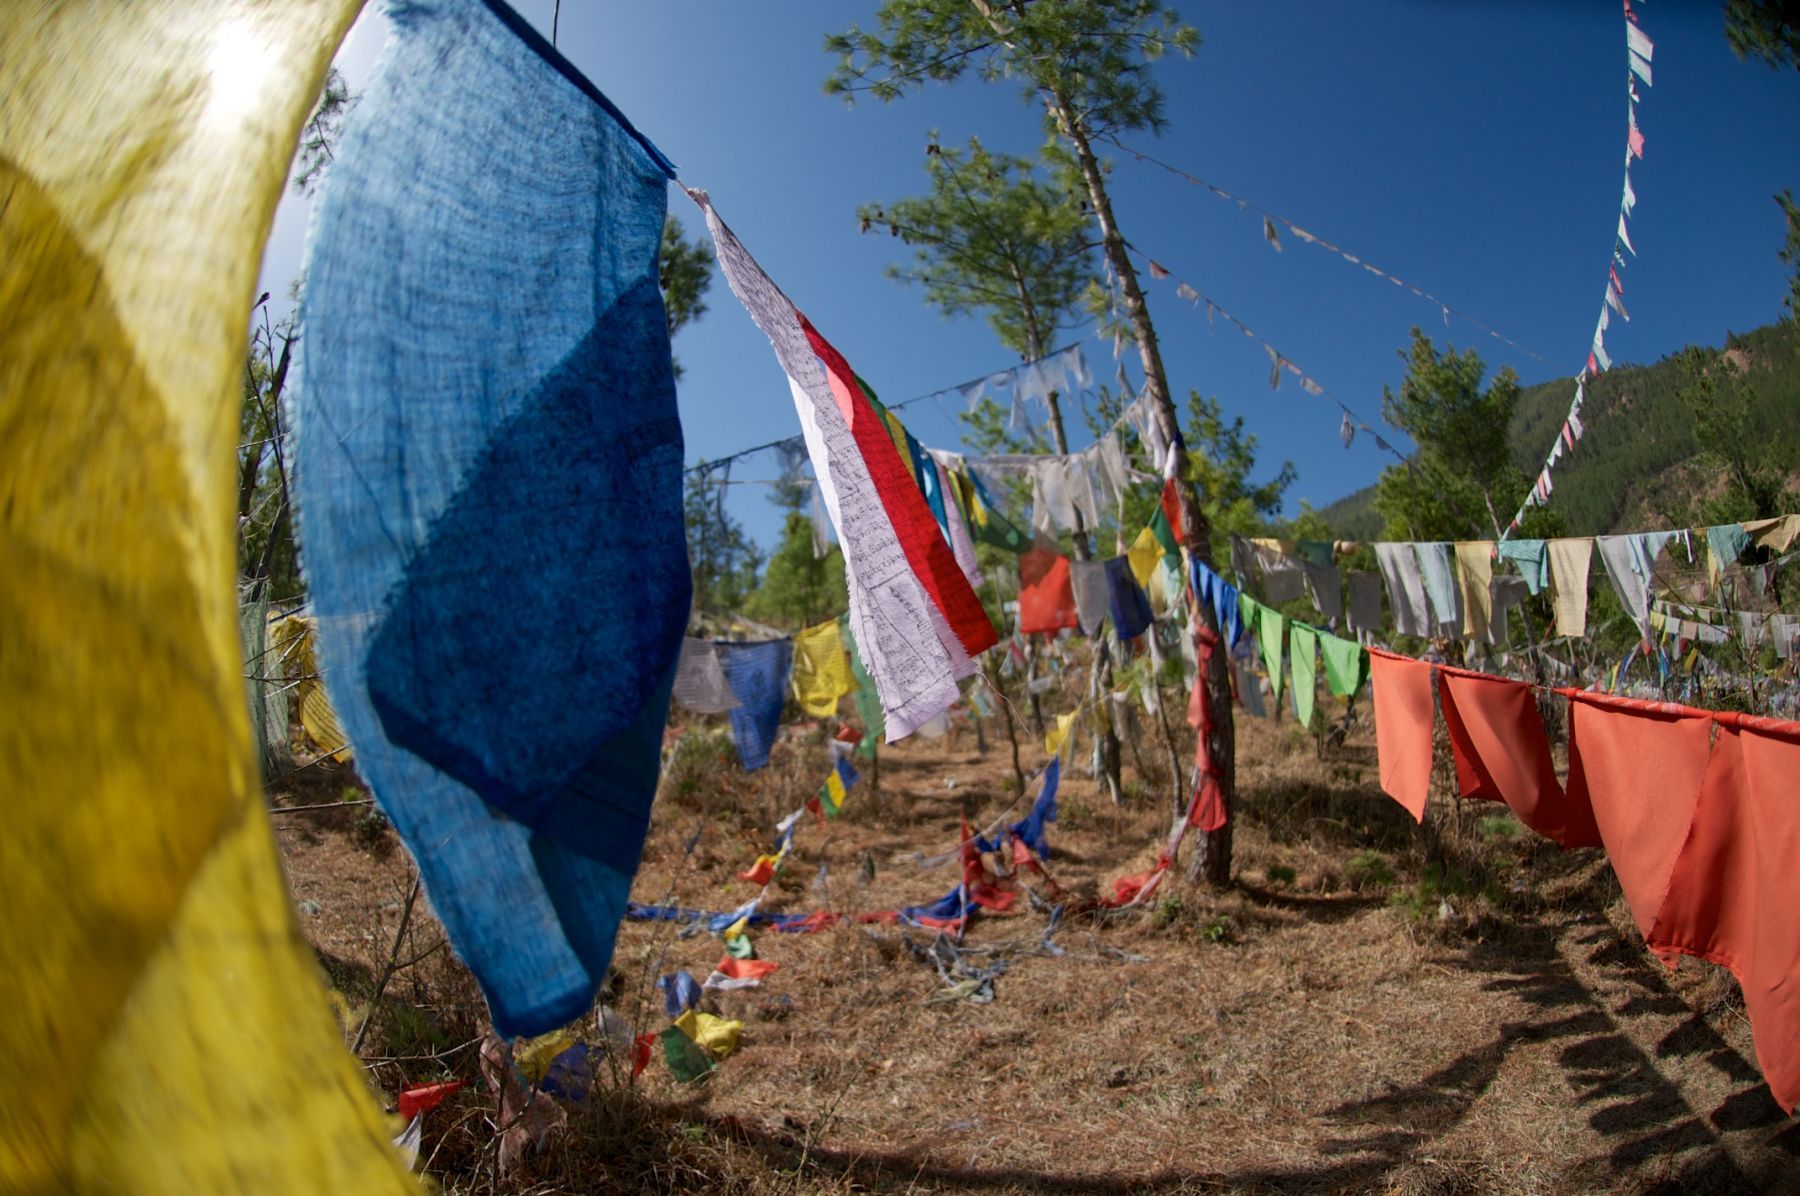 Bhutanese prayer flags